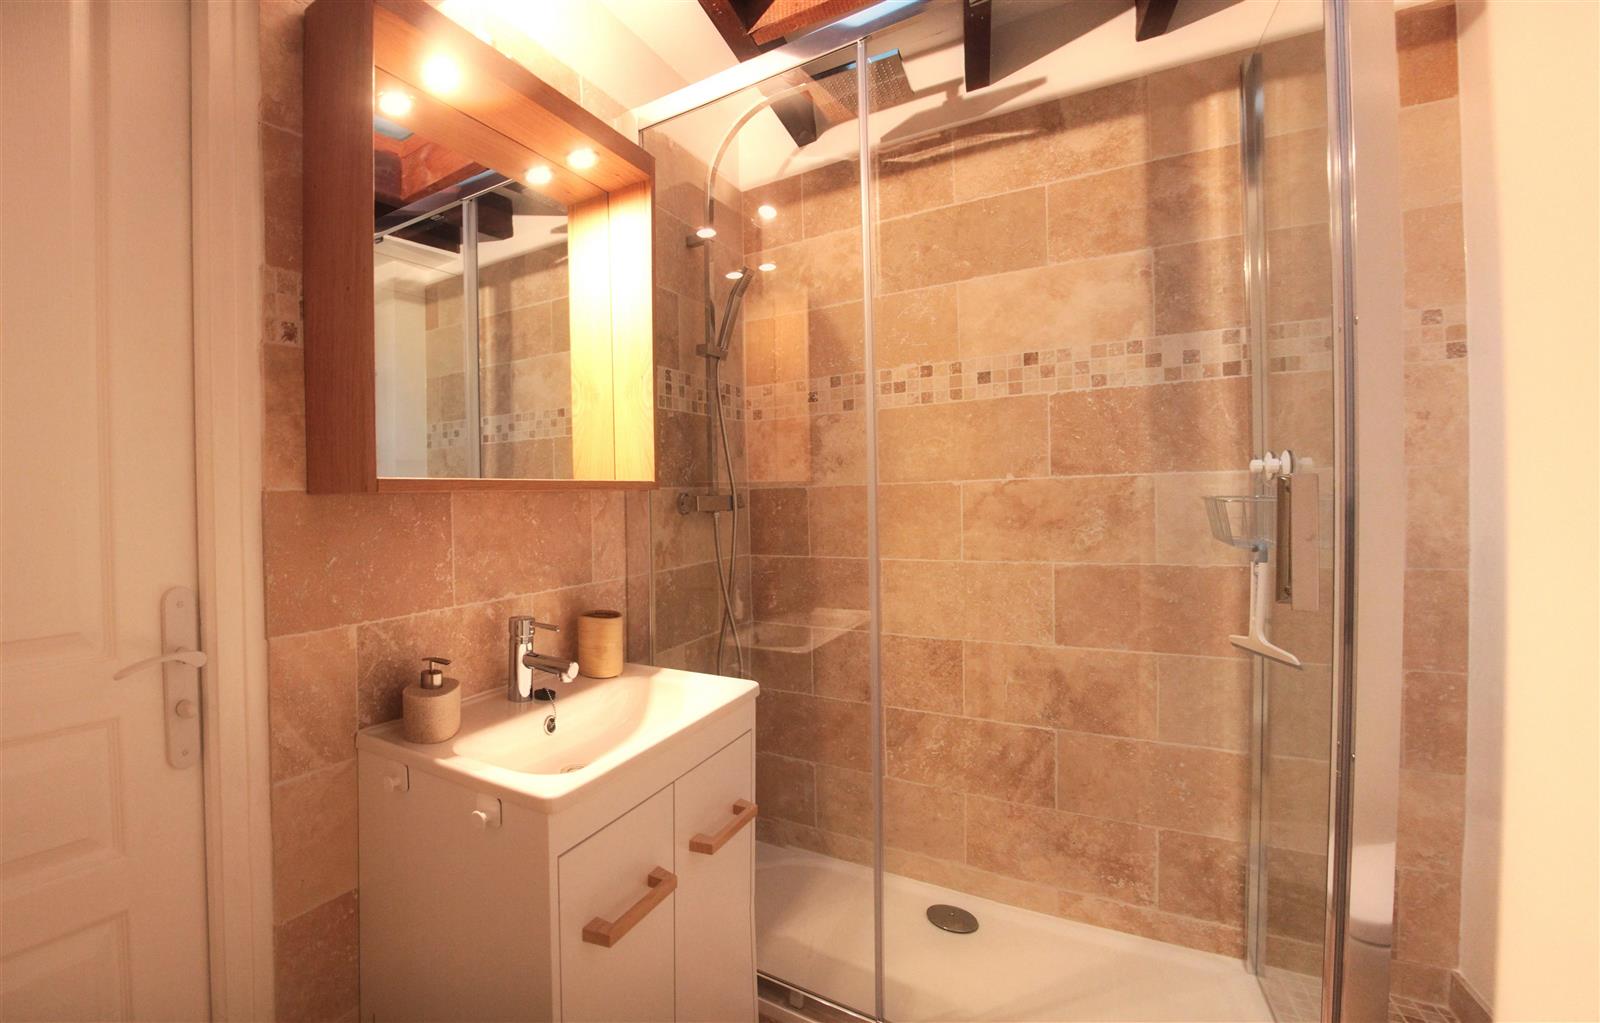 Une salle de bain moderne et chaleureuse